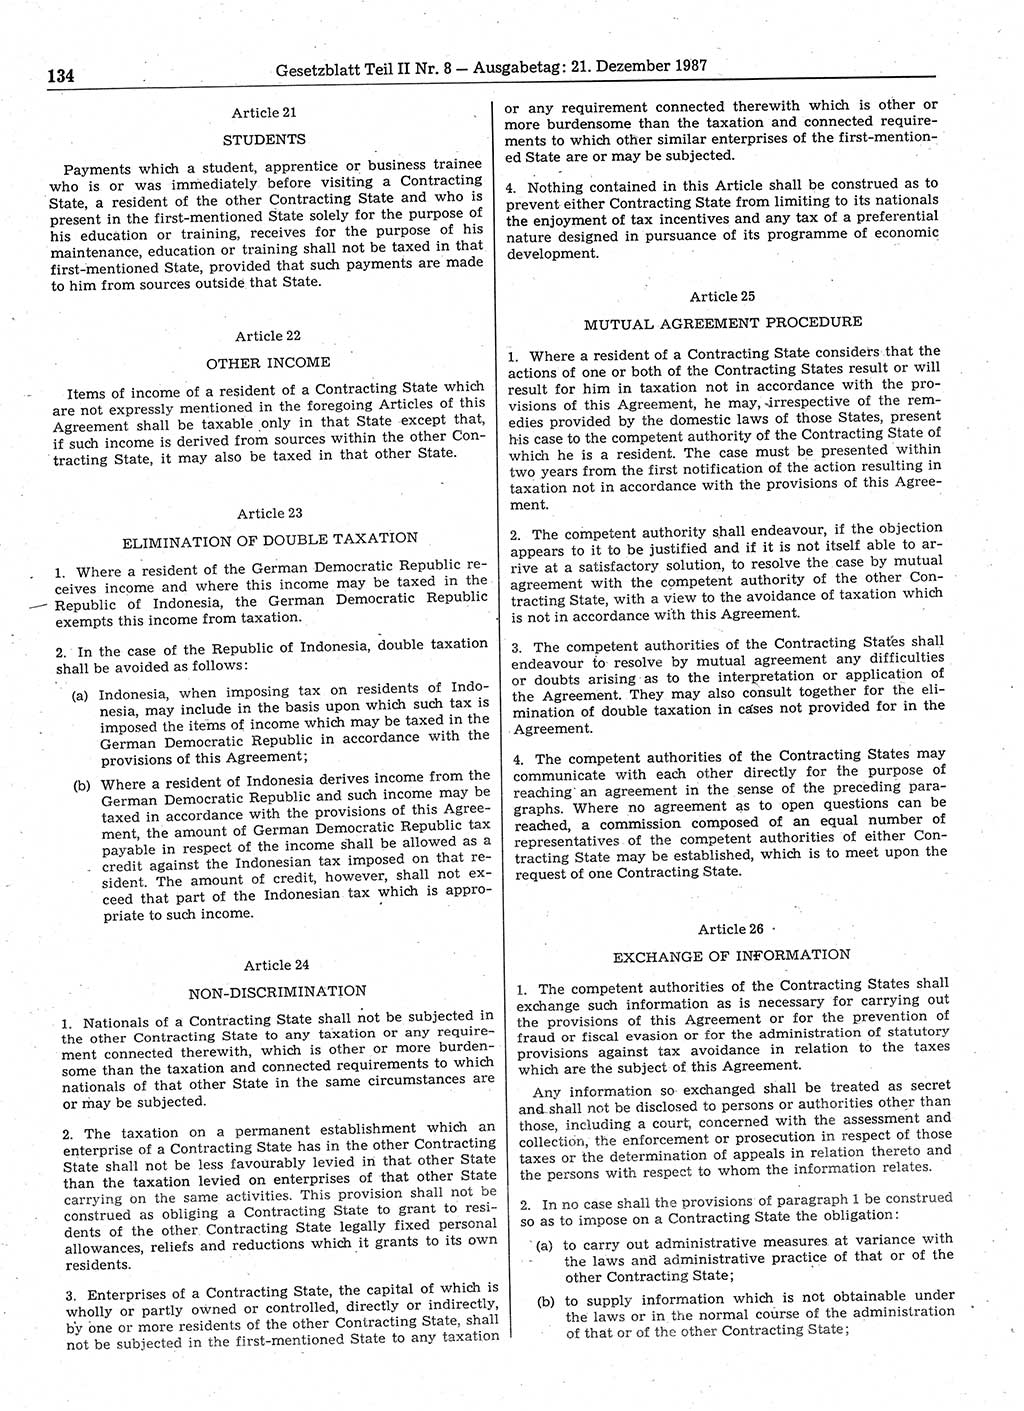 Gesetzblatt (GBl.) der Deutschen Demokratischen Republik (DDR) Teil ⅠⅠ 1987, Seite 134 (GBl. DDR ⅠⅠ 1987, S. 134)